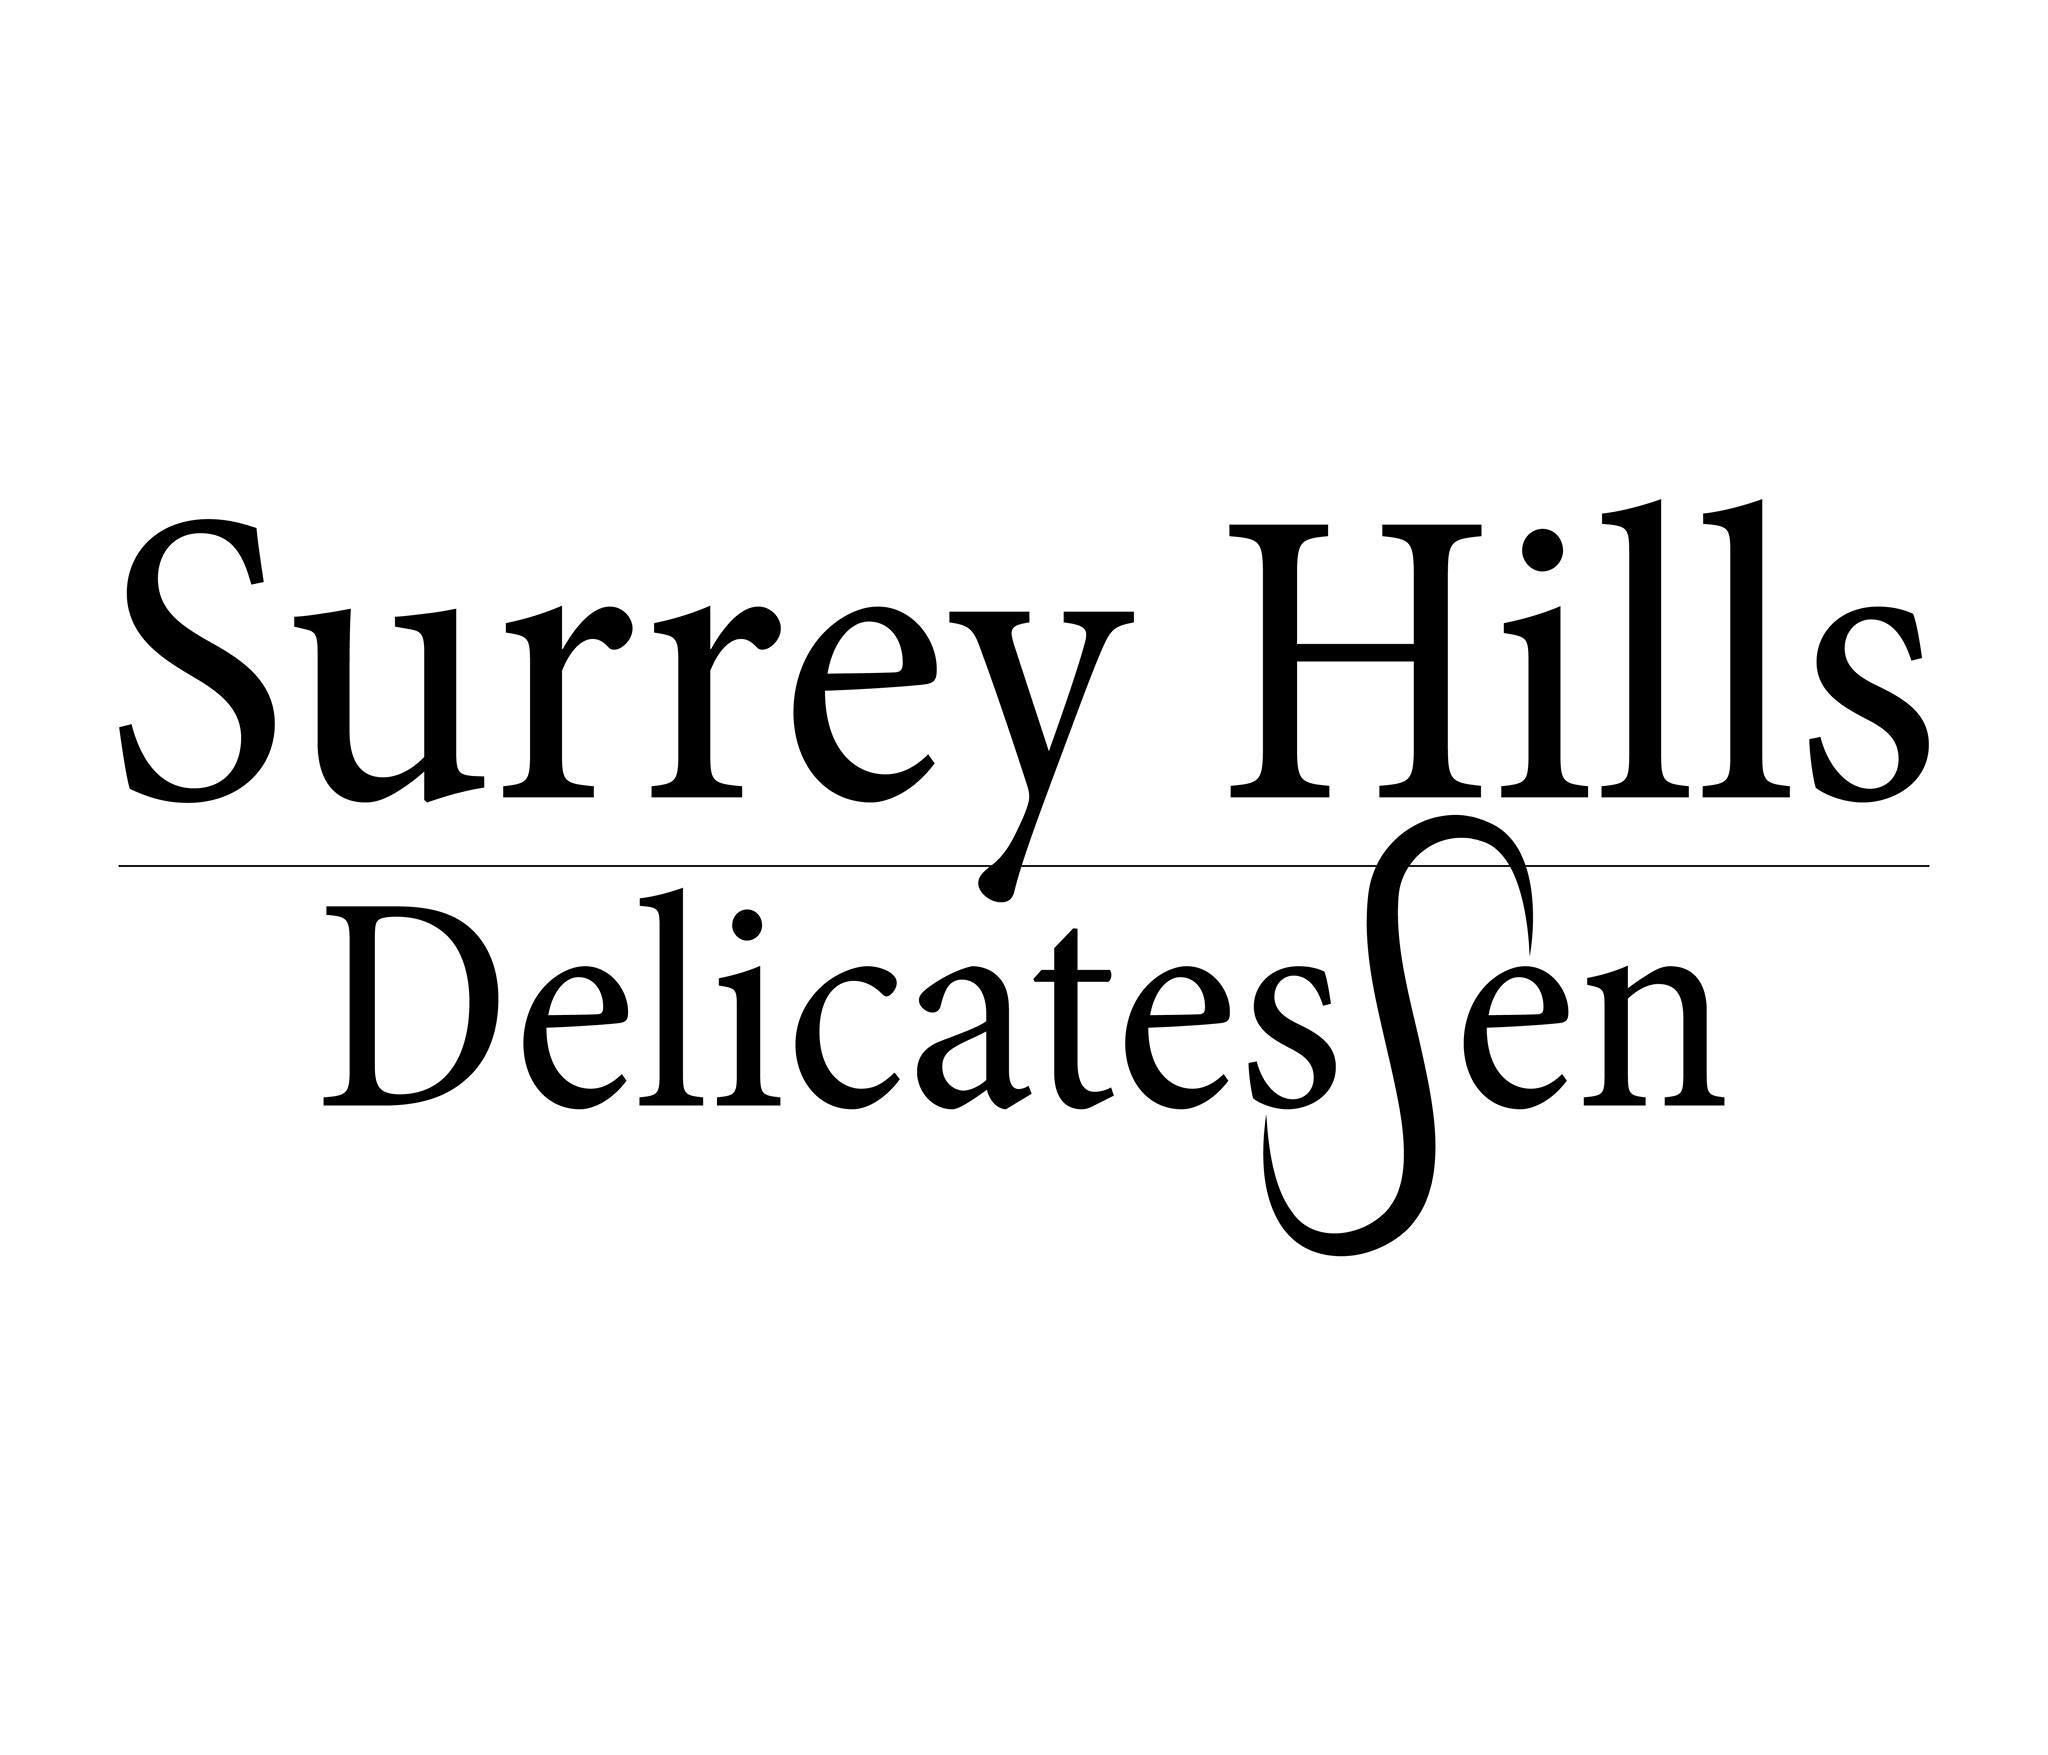 Surrey Hills Delicatessen in 